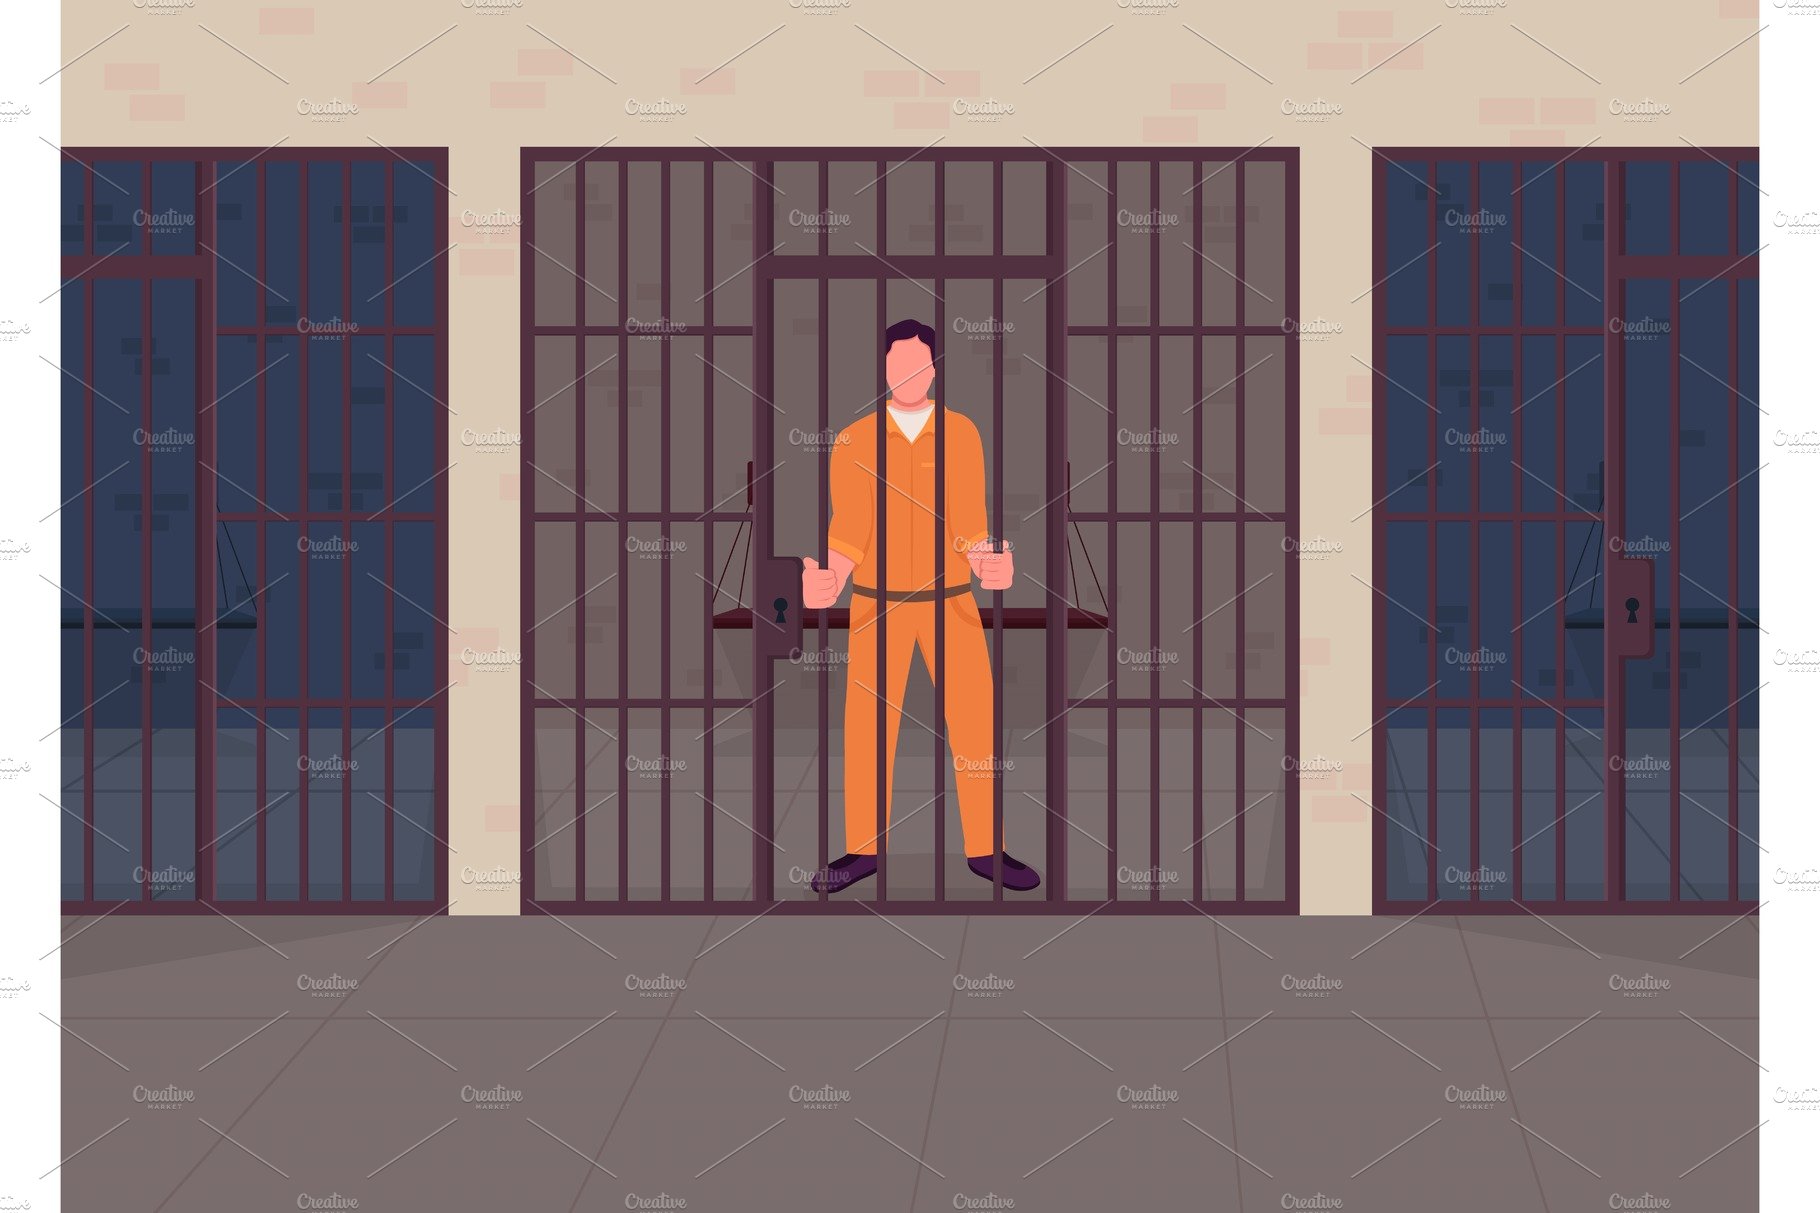 Criminal in prison illustration cover image.